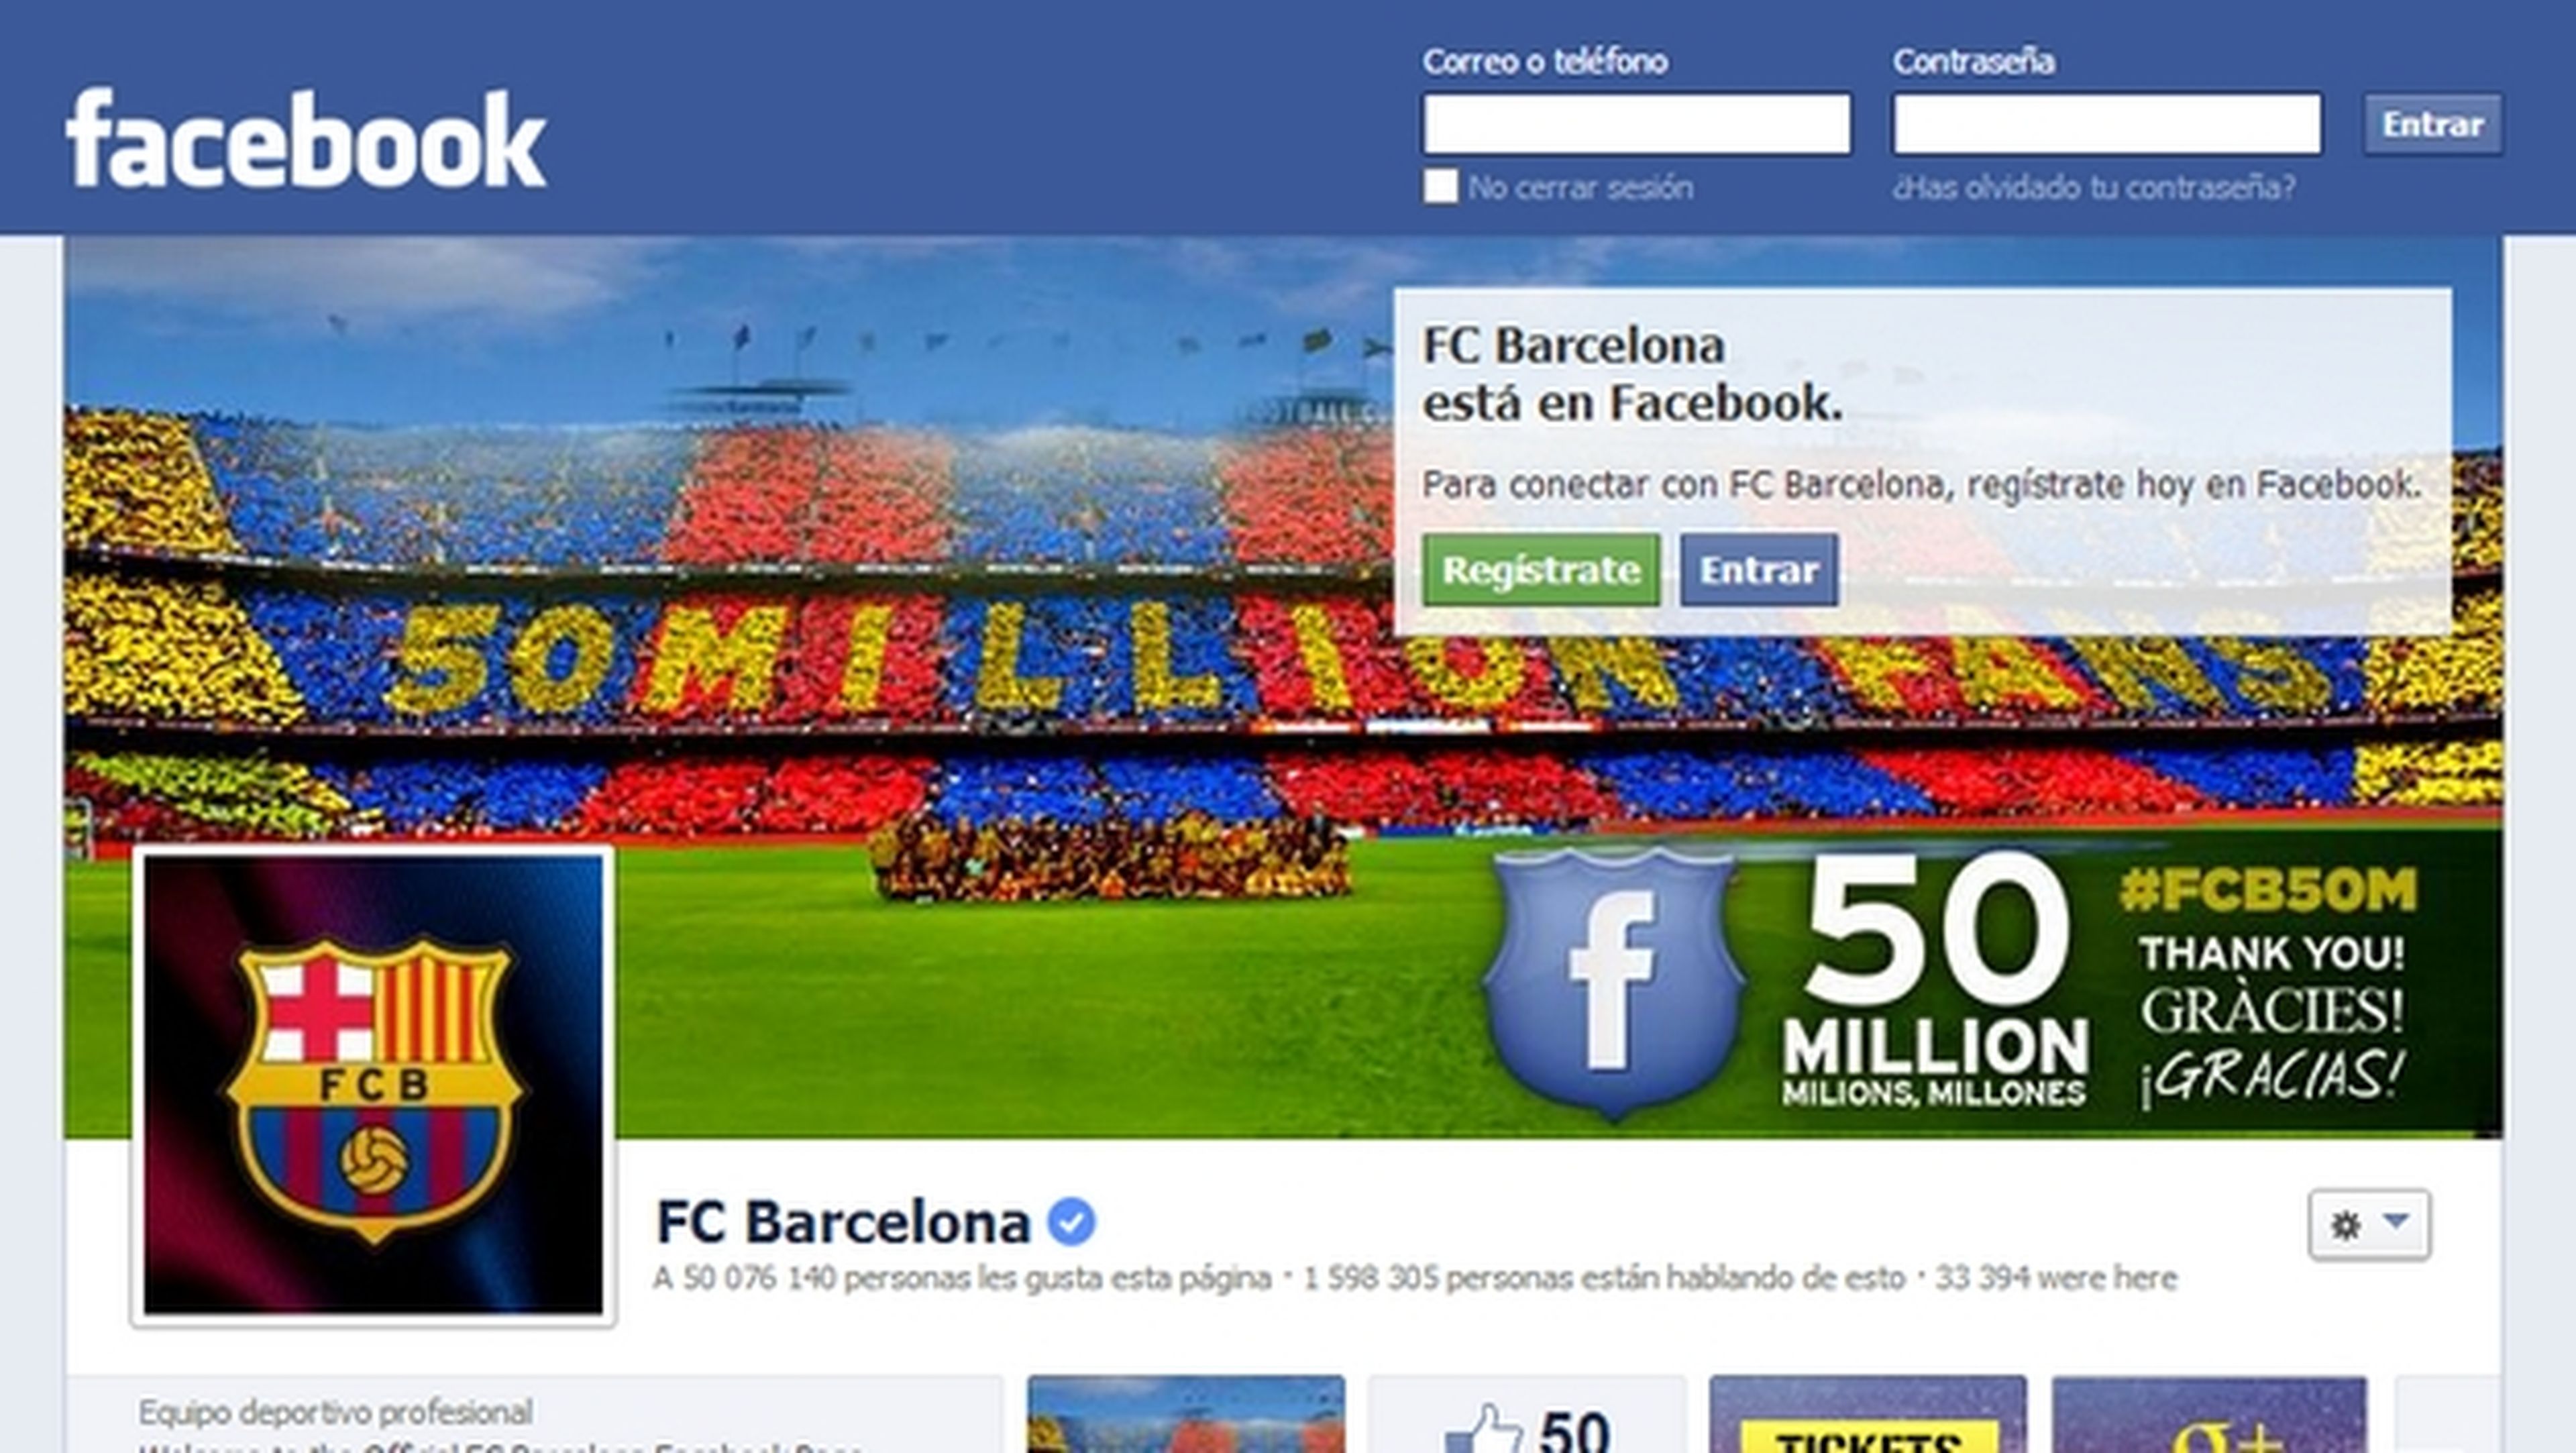 El F.C. Barcelona es el primer club deportivo en alcanzar los 50 millones de seguidores en Facebook. El Real Madrid lleva 47 millones. Cristiano Ronaldo y Messi, por encima de esas cifras.